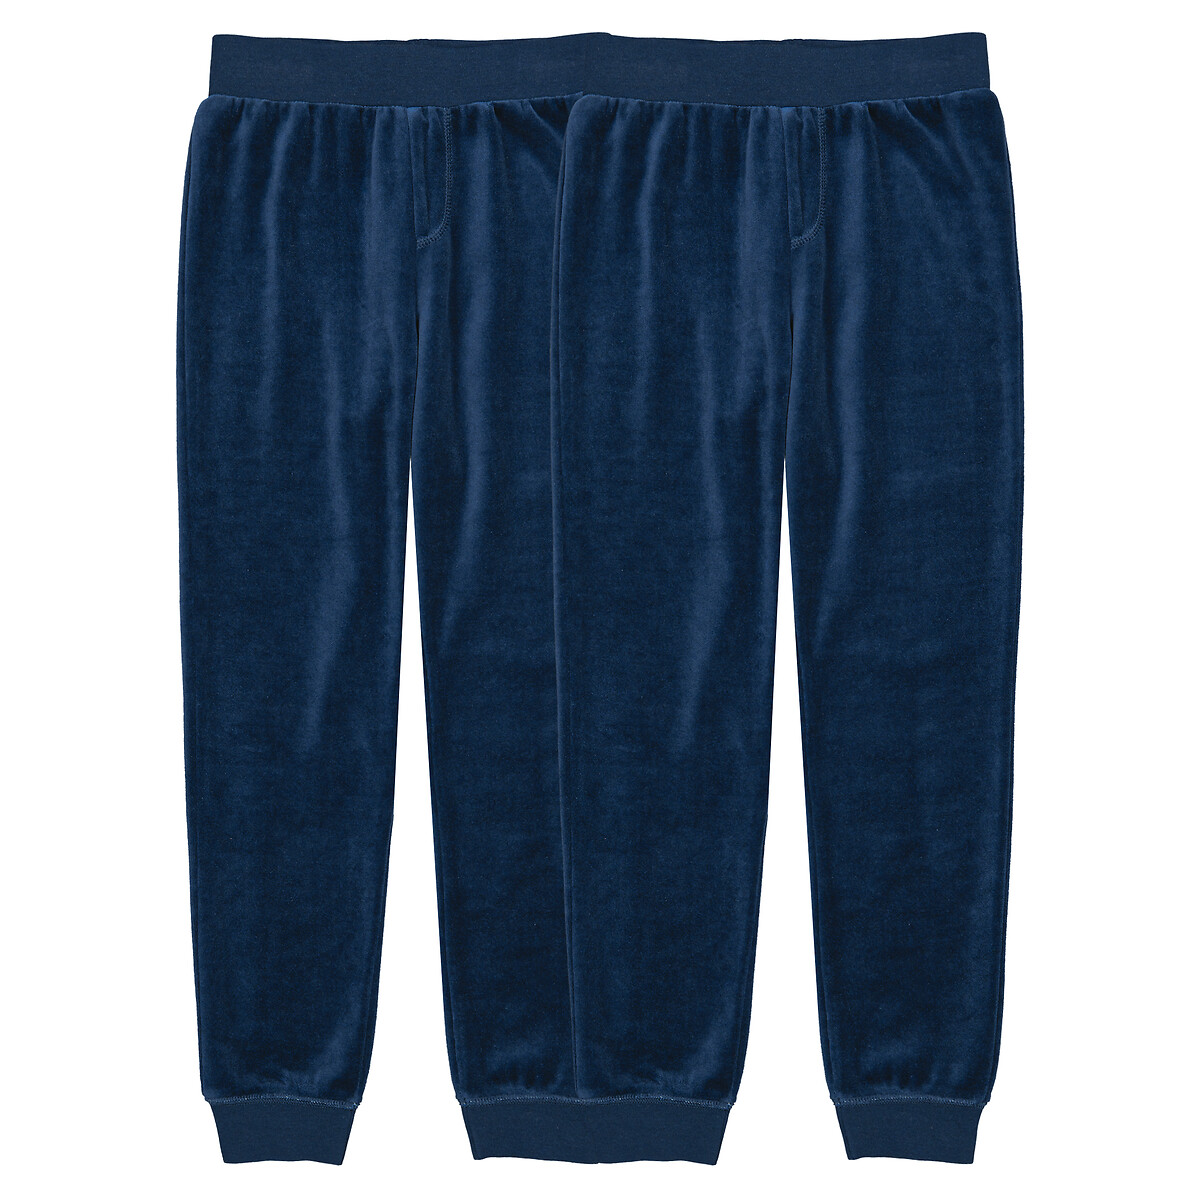 Комплект из двух брюк пижамных из велюра 3 года - 94 см синий комплект из трех пижамных брюк la redoute 3 года 94 см синий